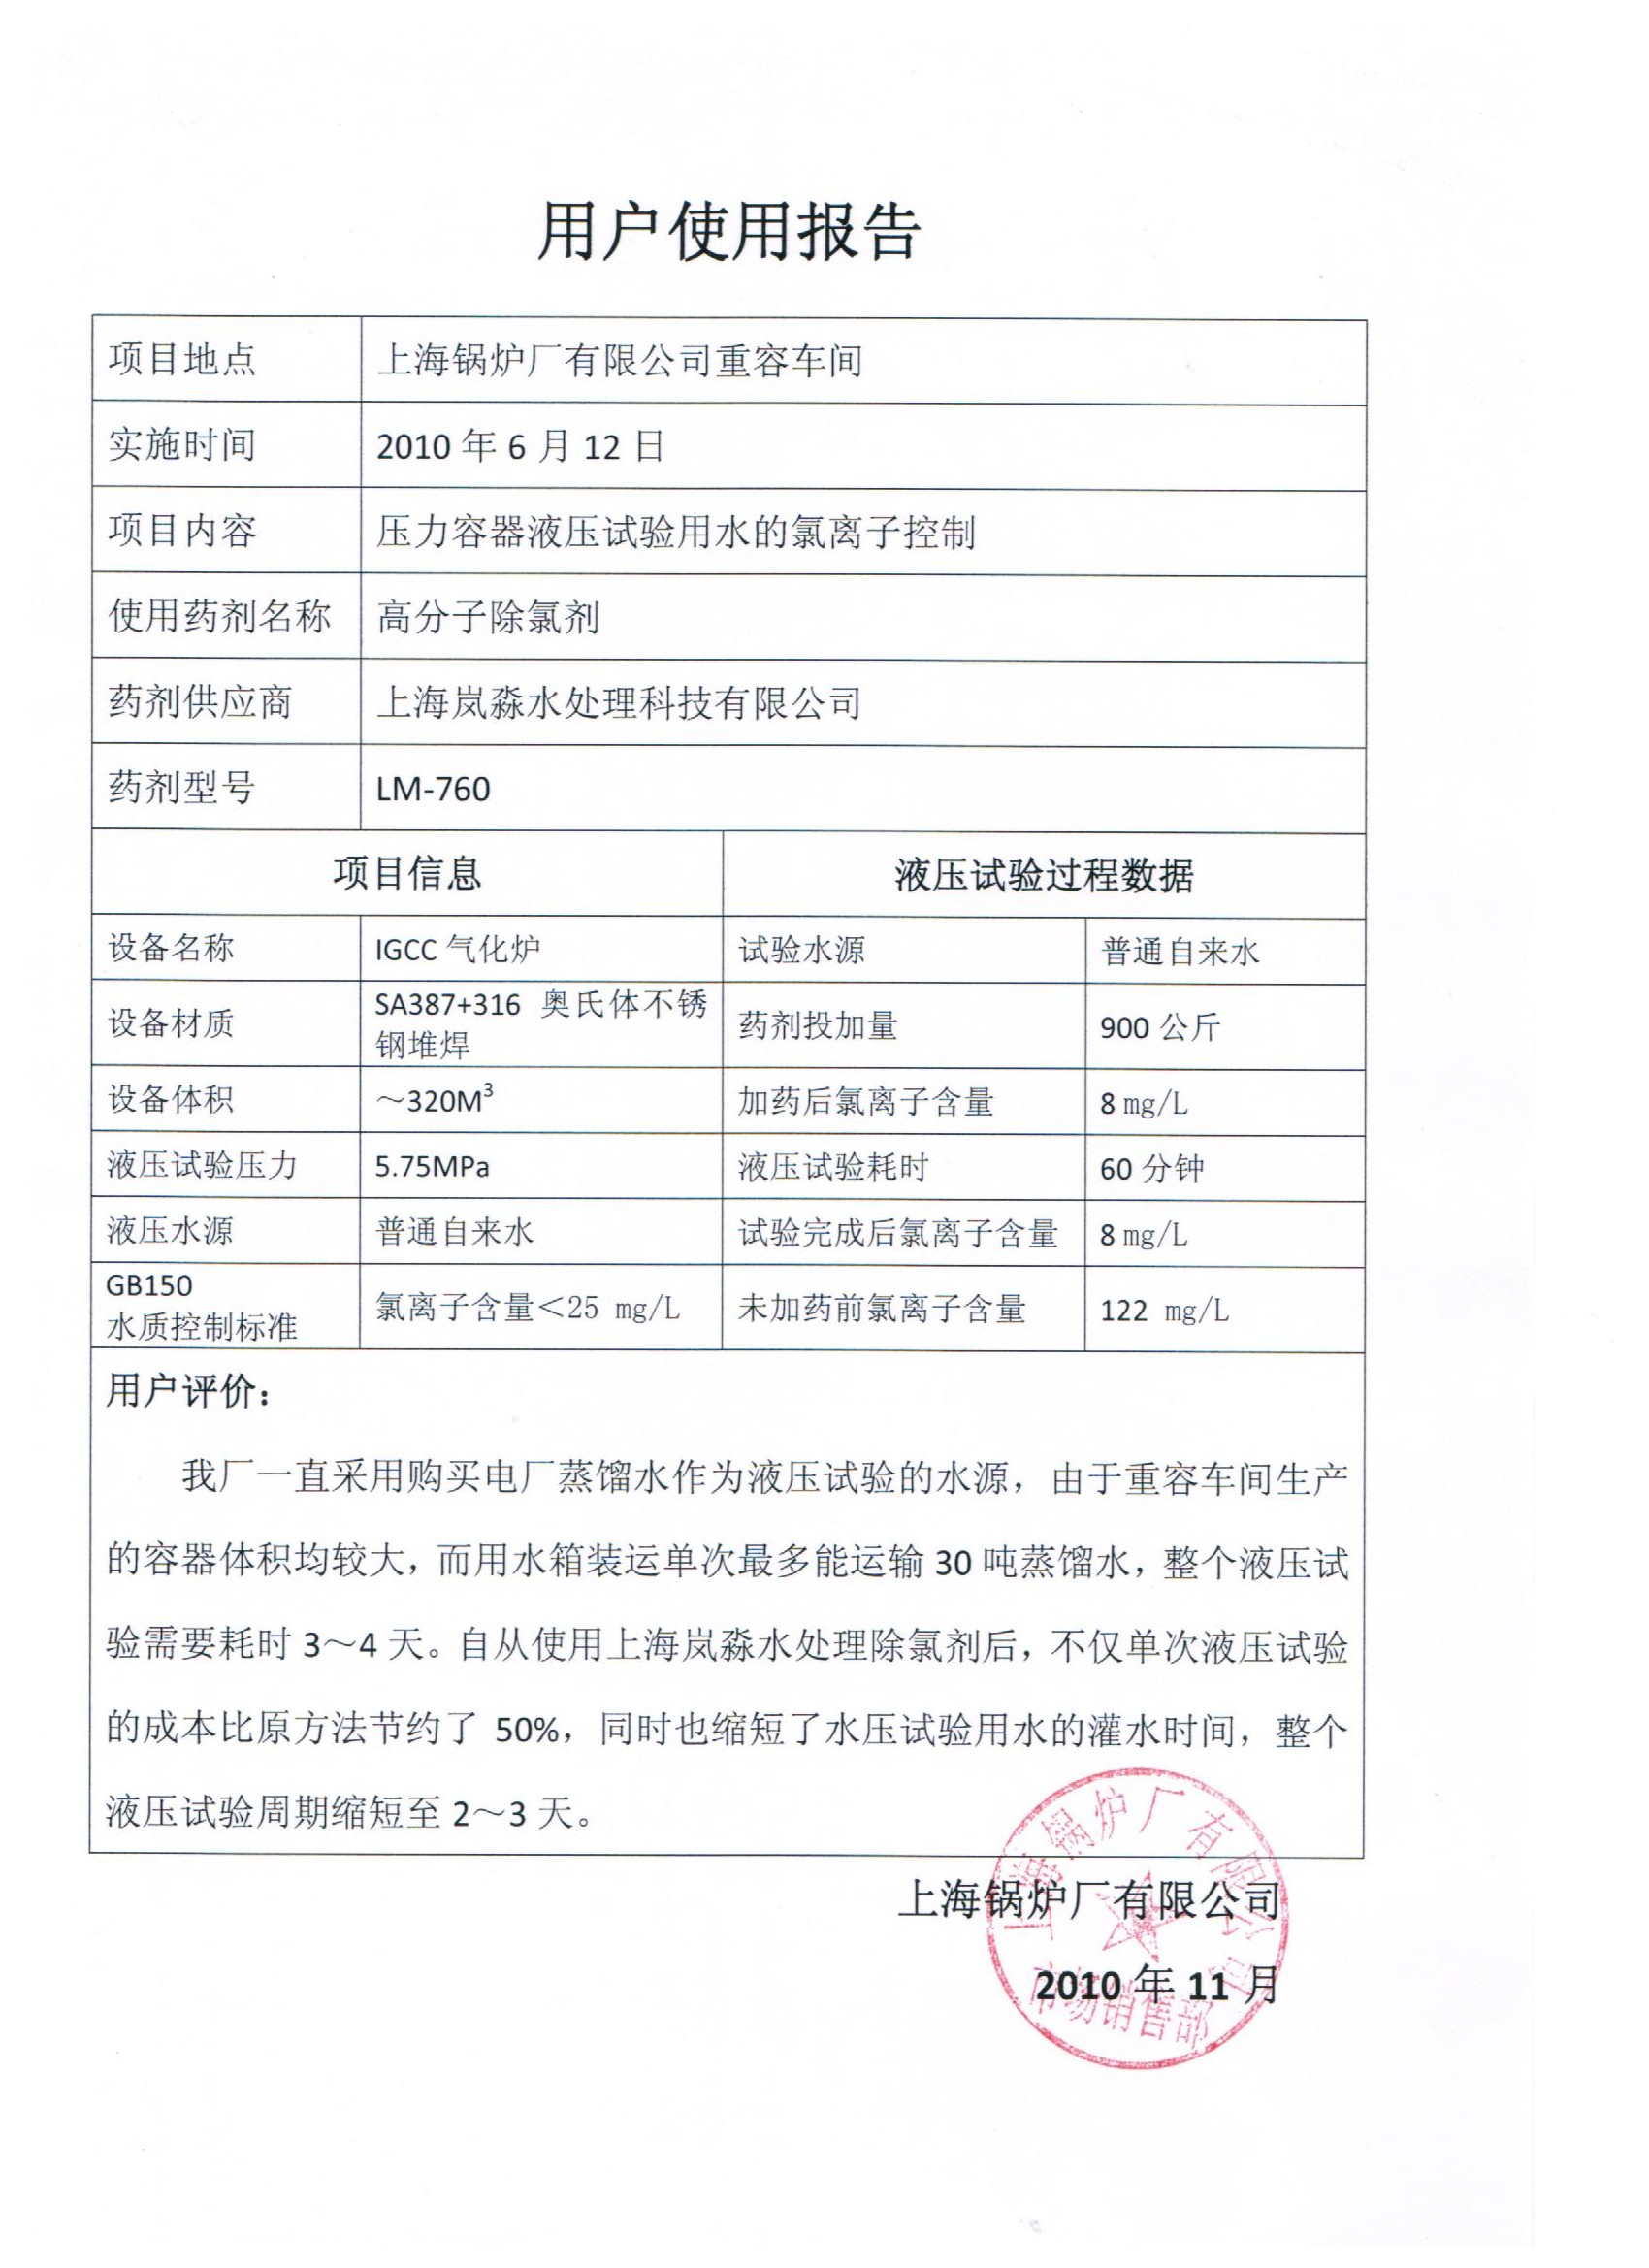 上海锅炉厂关于除氯剂的使用报告